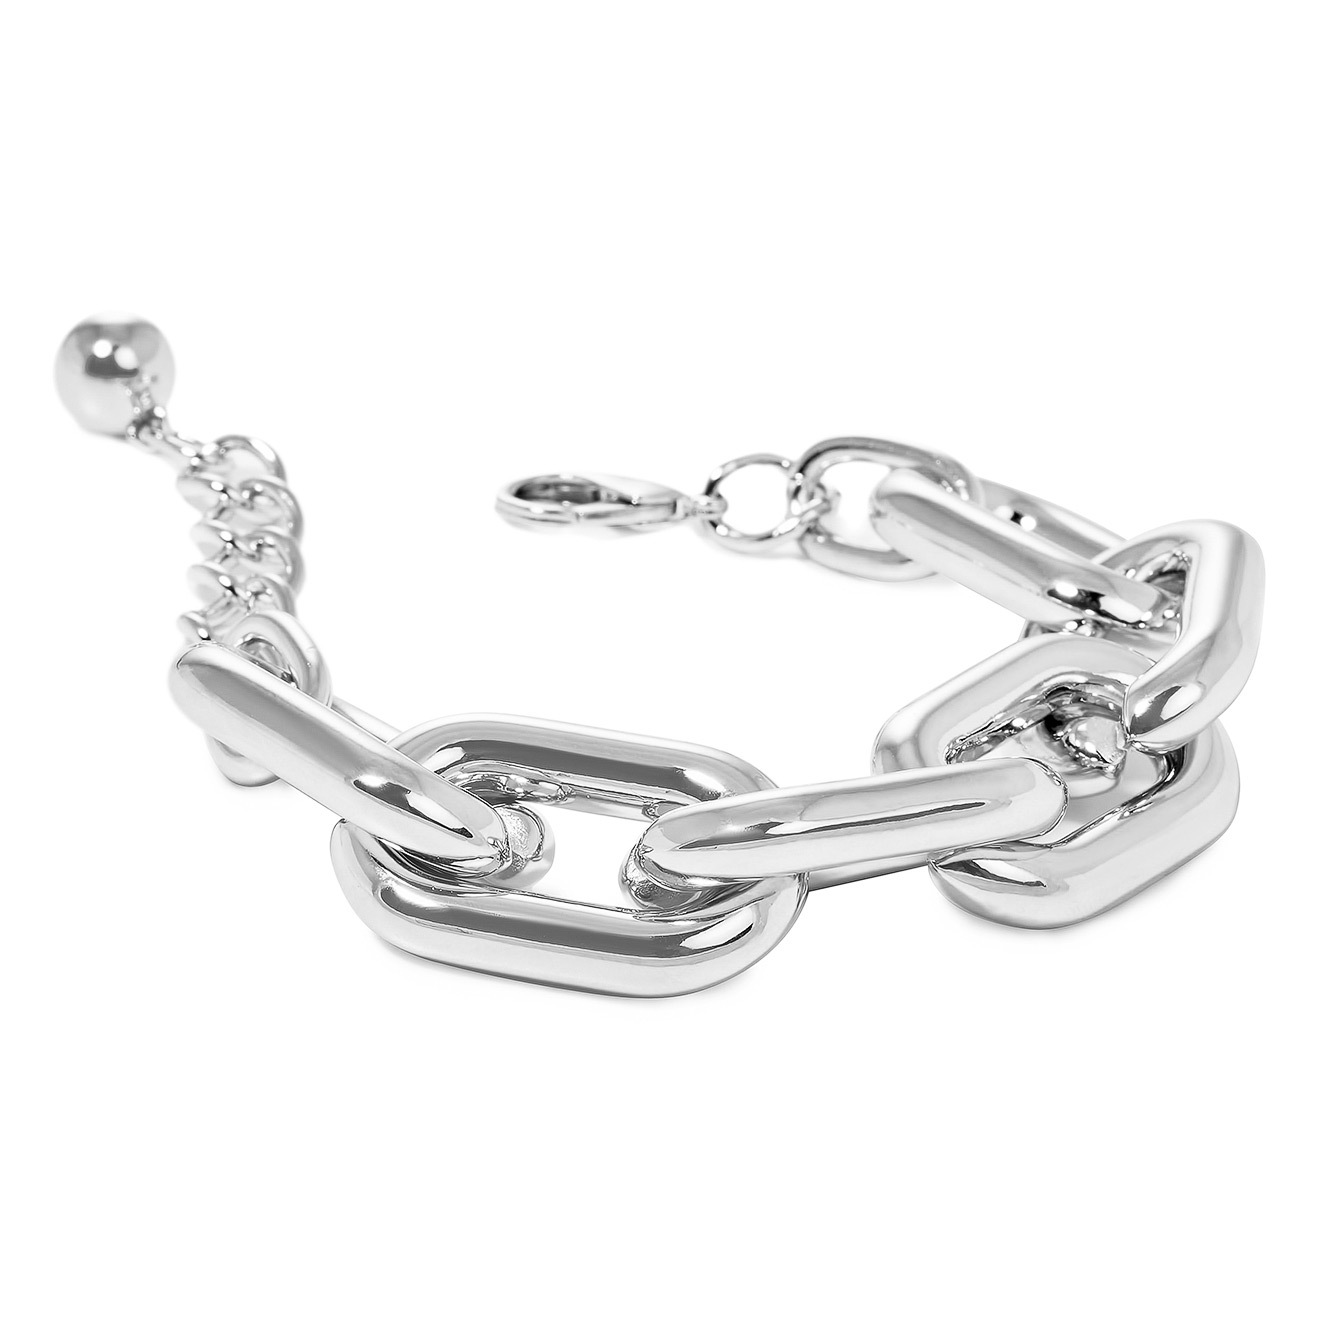 Aqua Серебристый браслет-цепь из крупных звеньев aqua серебристый браслет цепь с золотистым замком